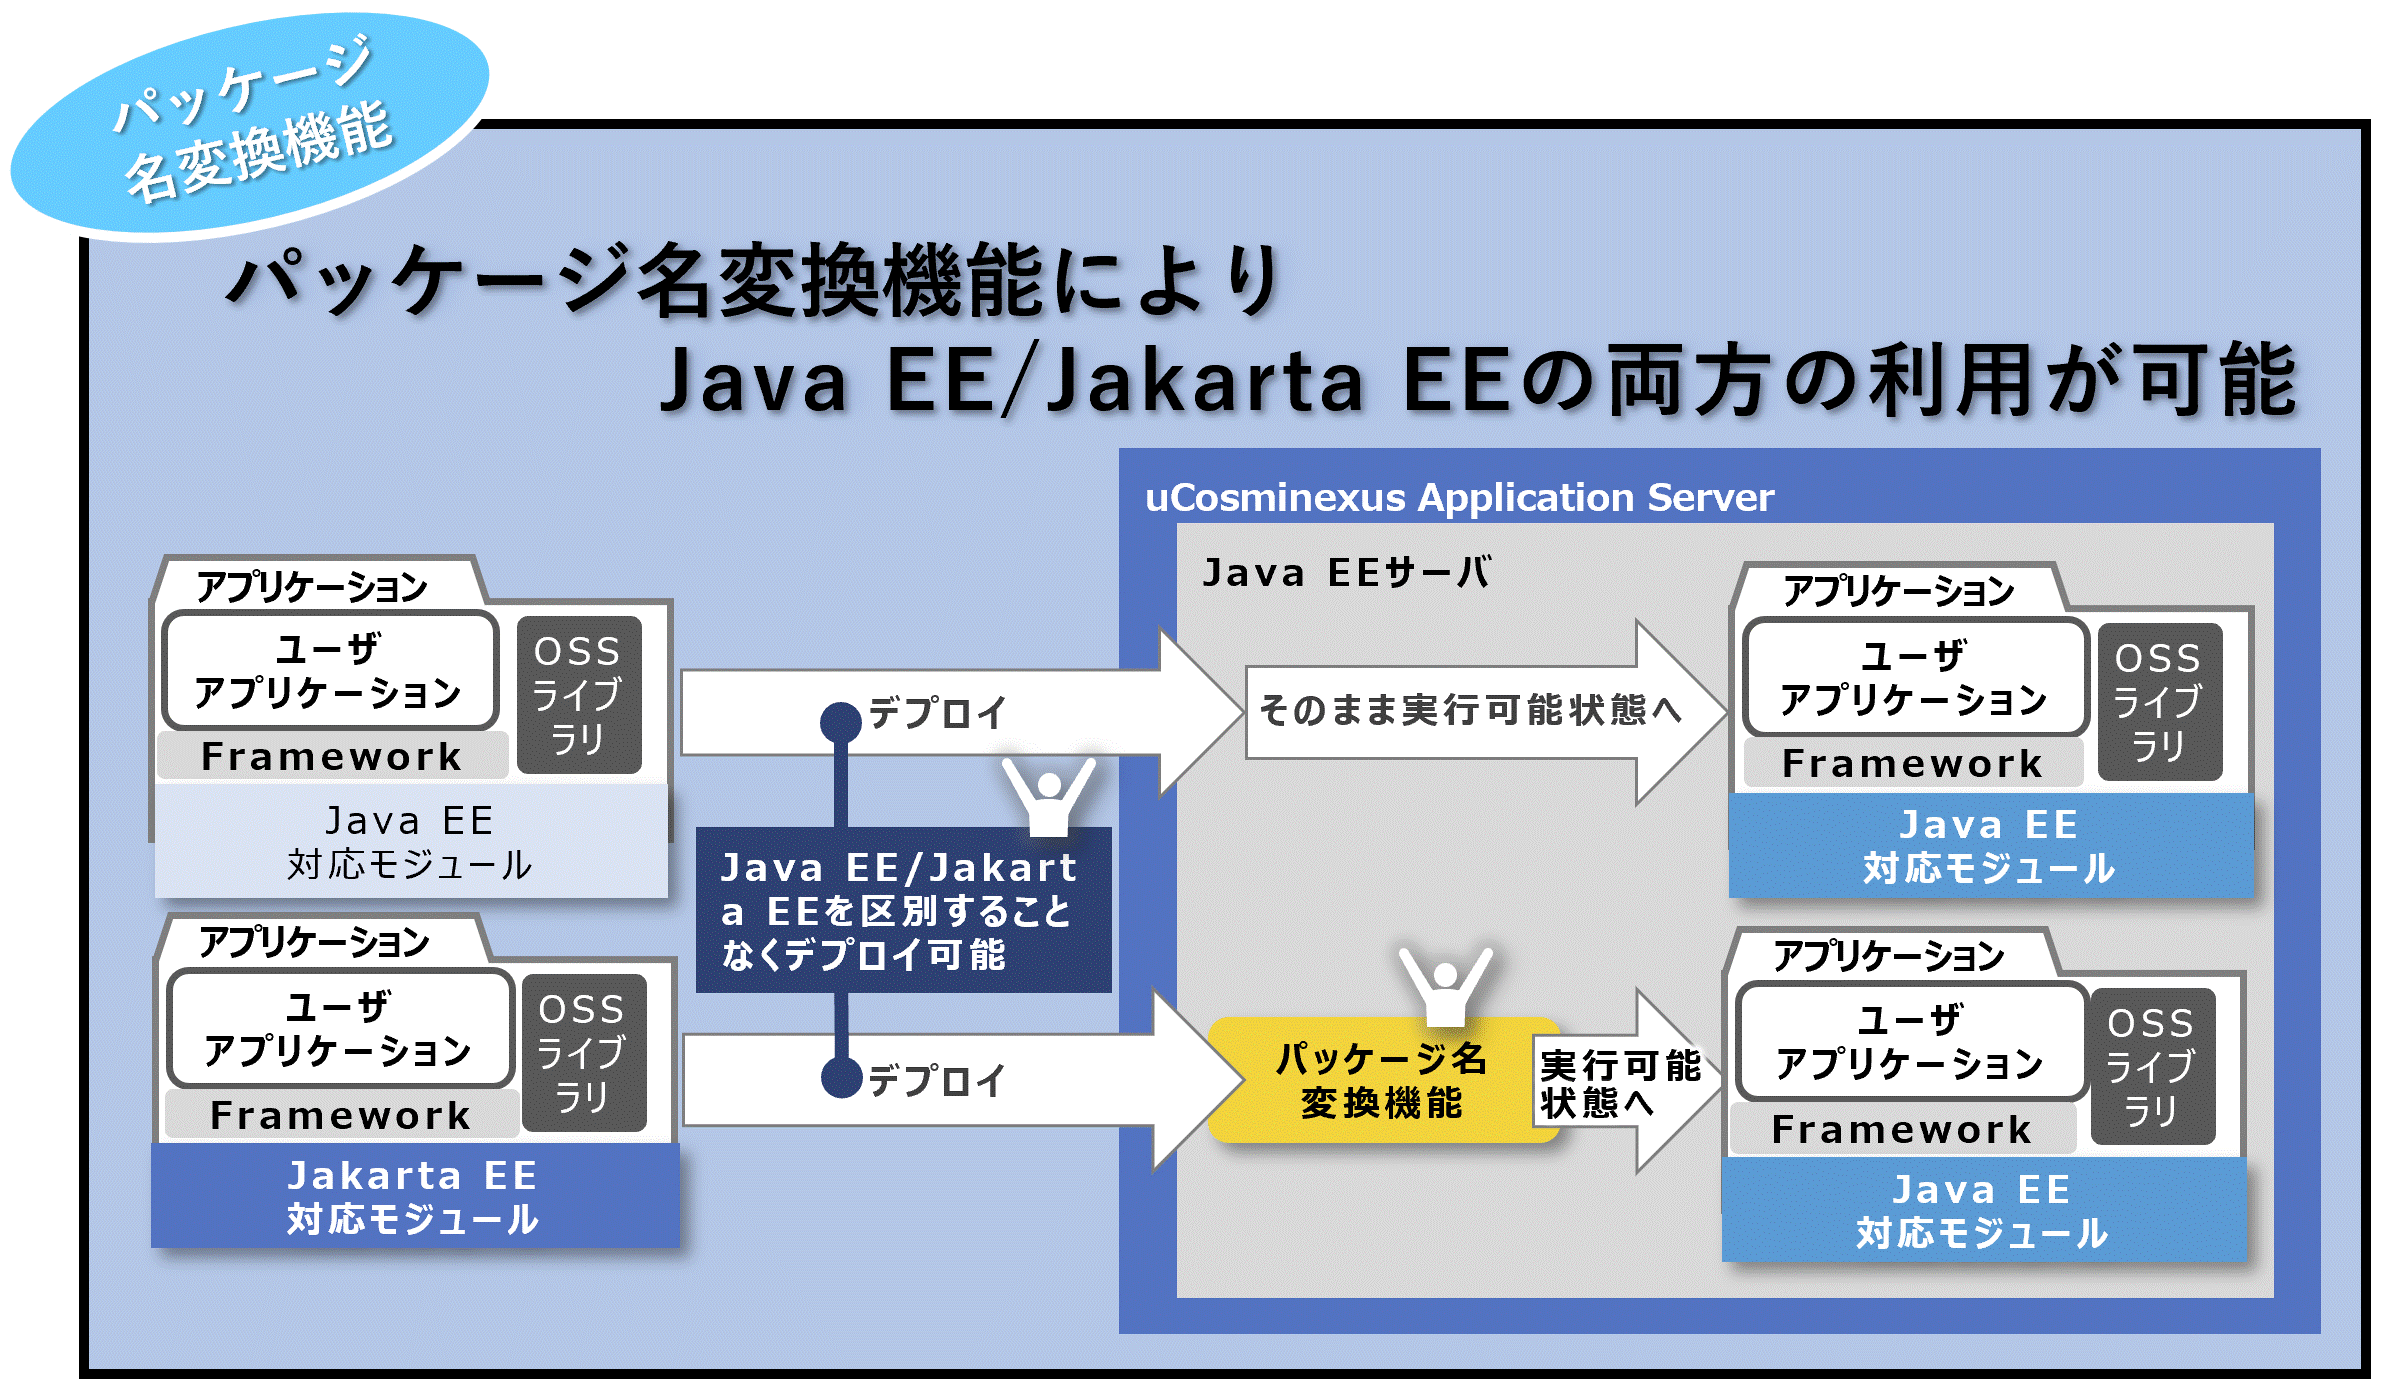 Java EE/Jakarta EEǂ̋Ki1APT[oŎgpł܂